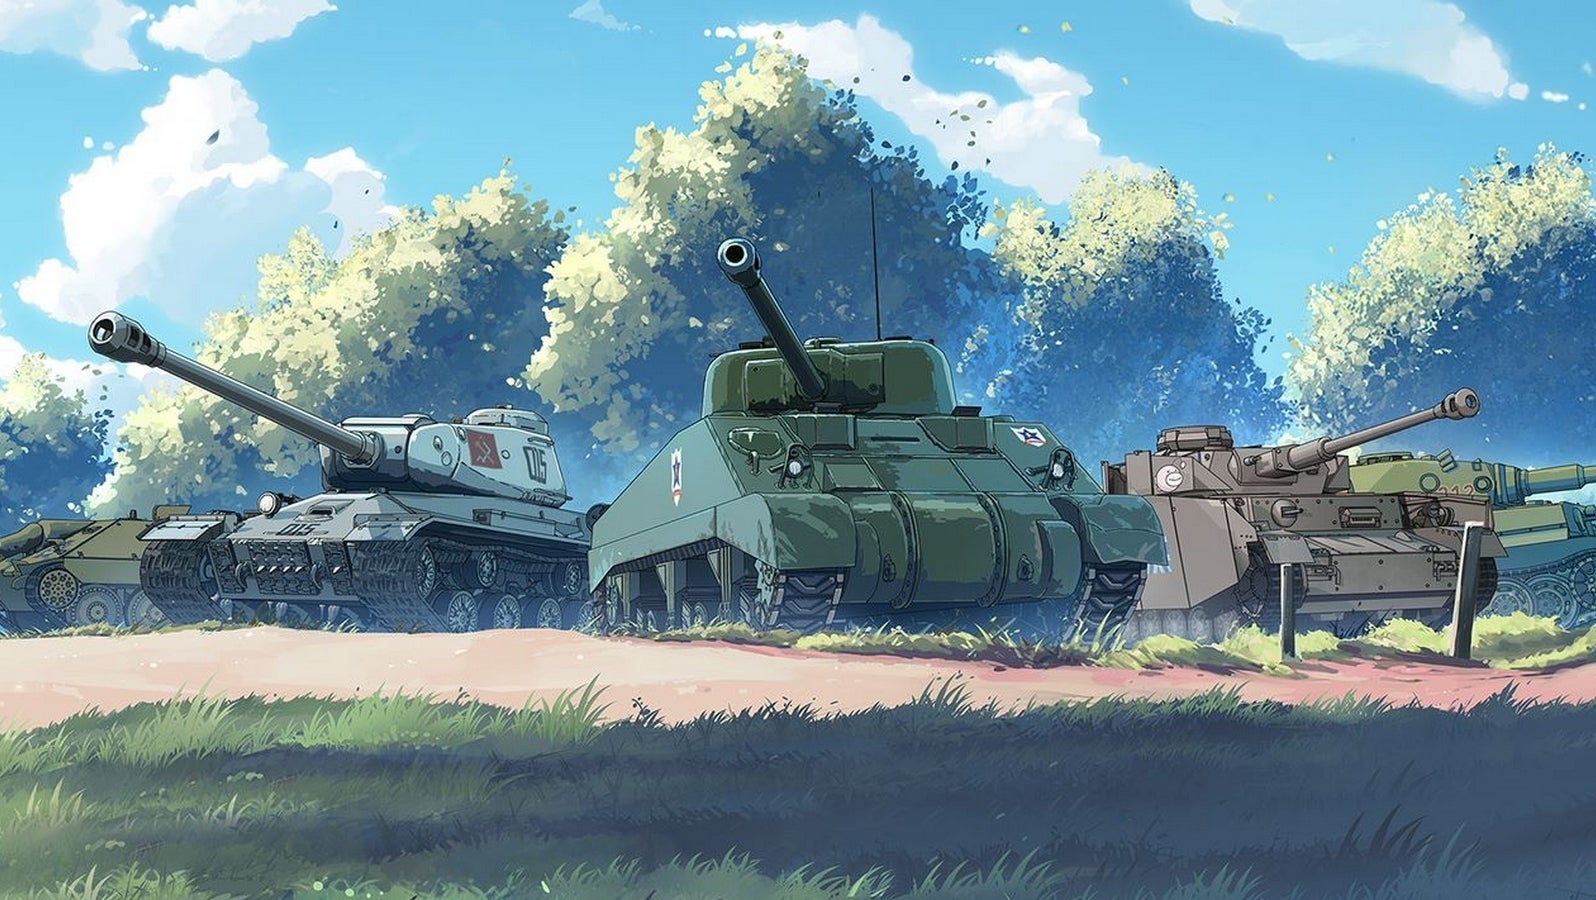 Bilder zu World of Tanks Blitz erhält weitere Inhalte zur Anime-Serie Girls und Panzer